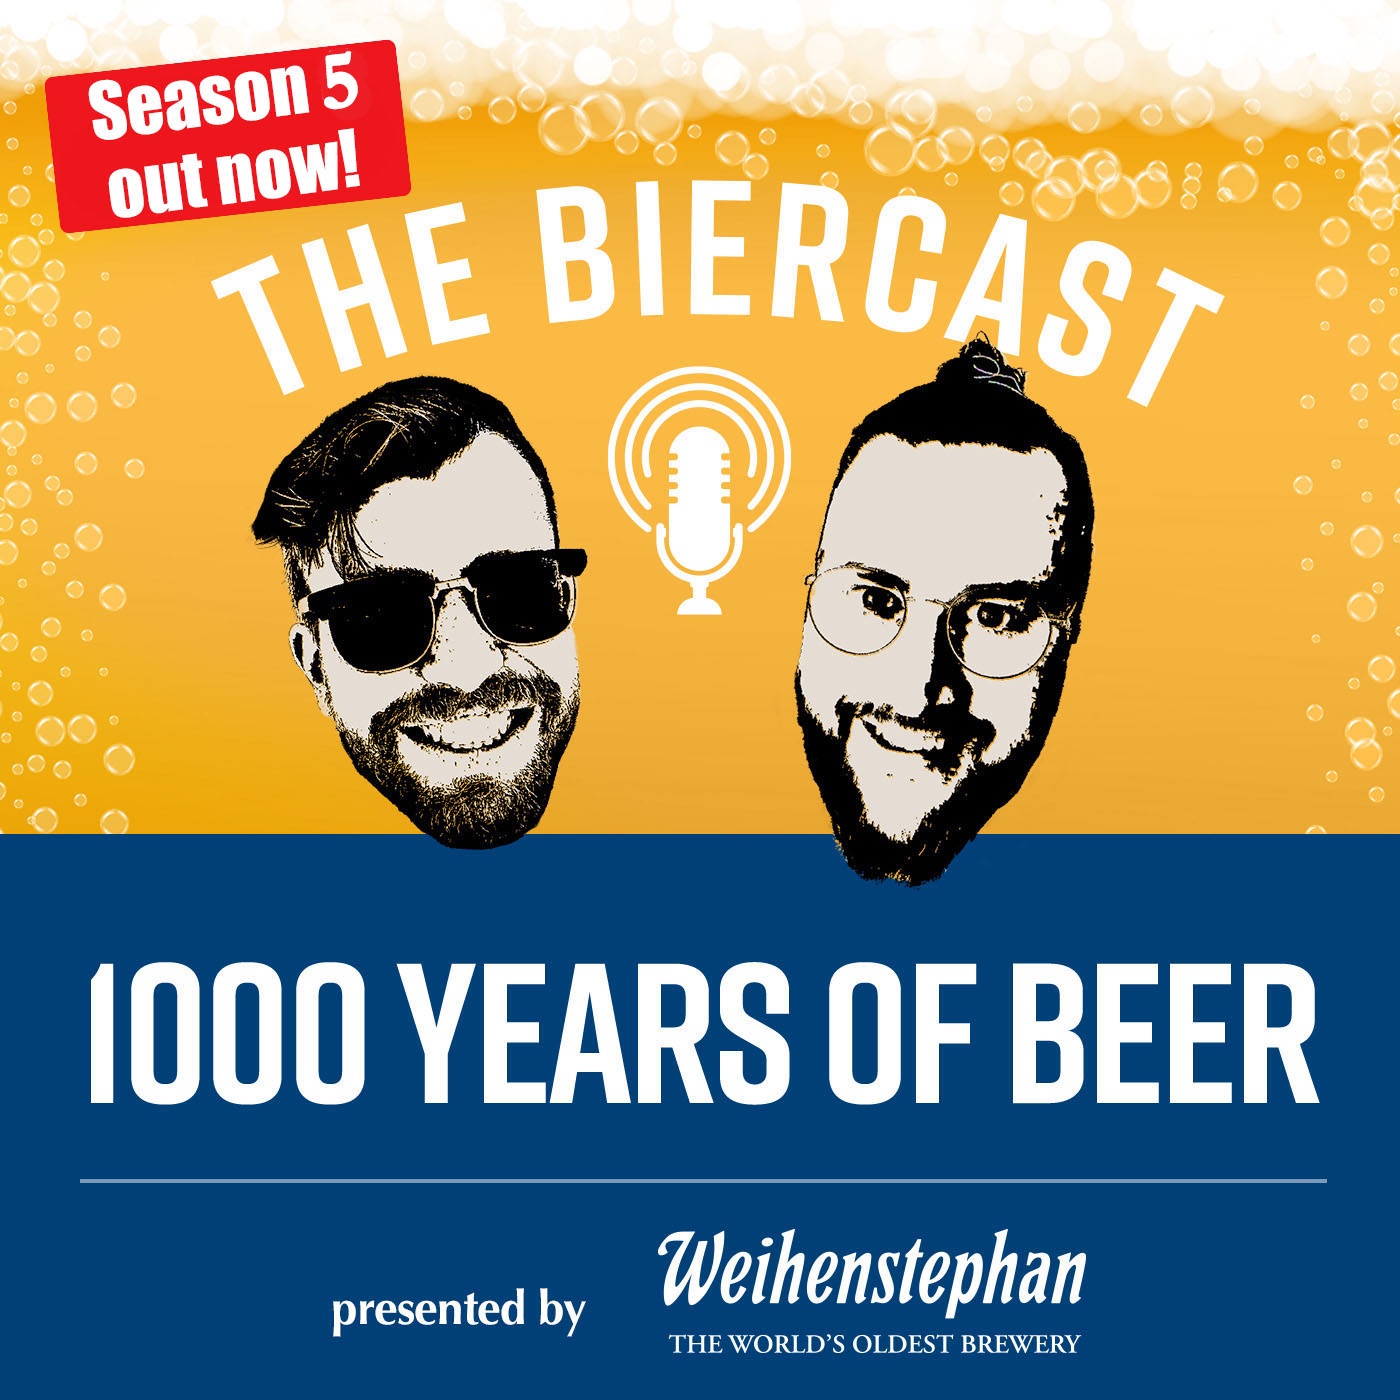 1000 Years of Beer - the Weihenstephaner Biercast